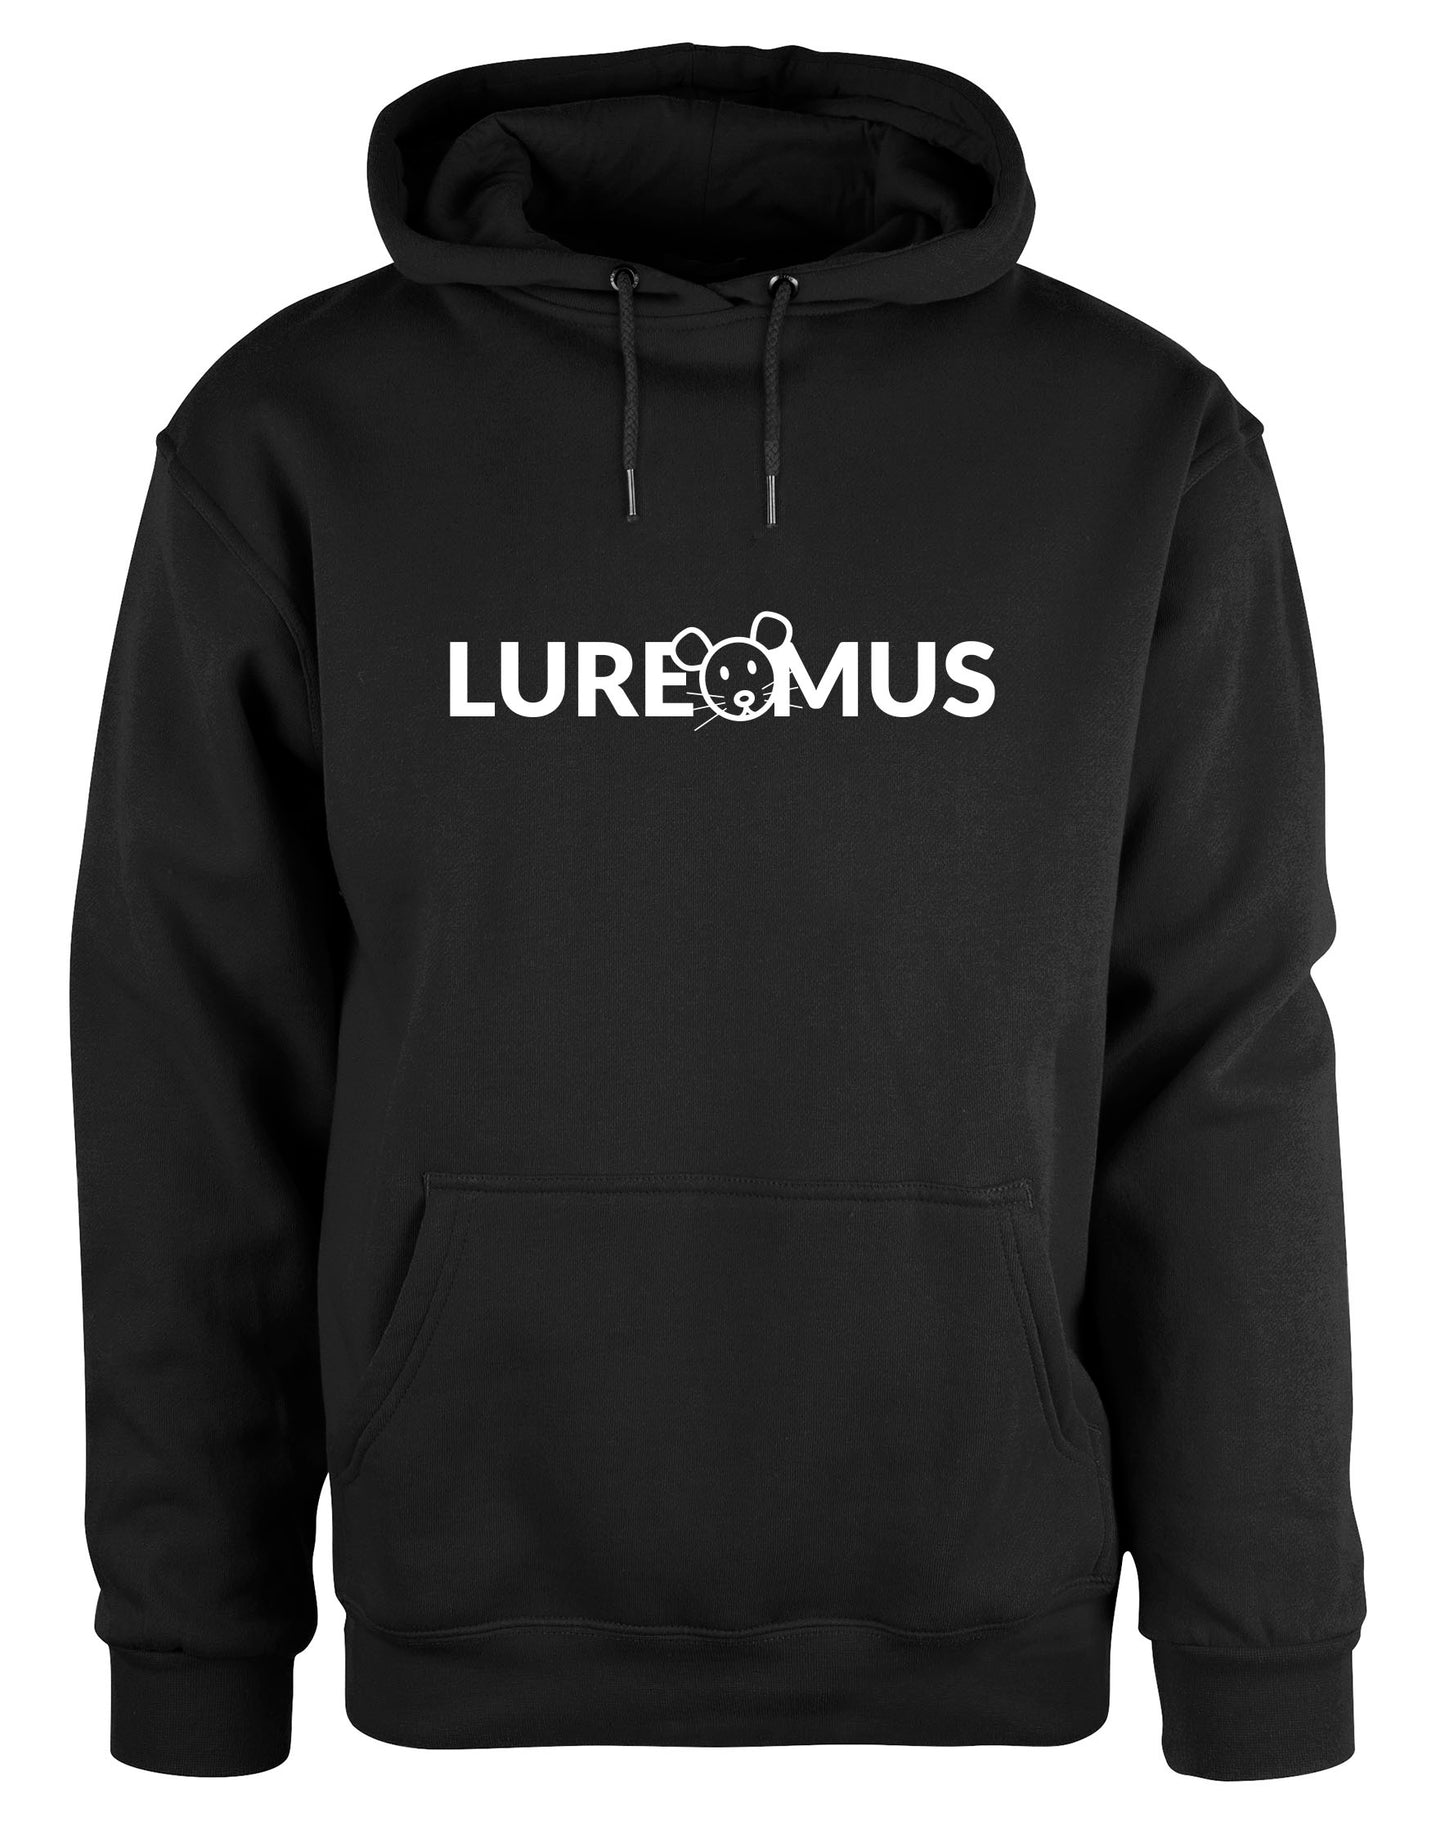 Luremus hoodie